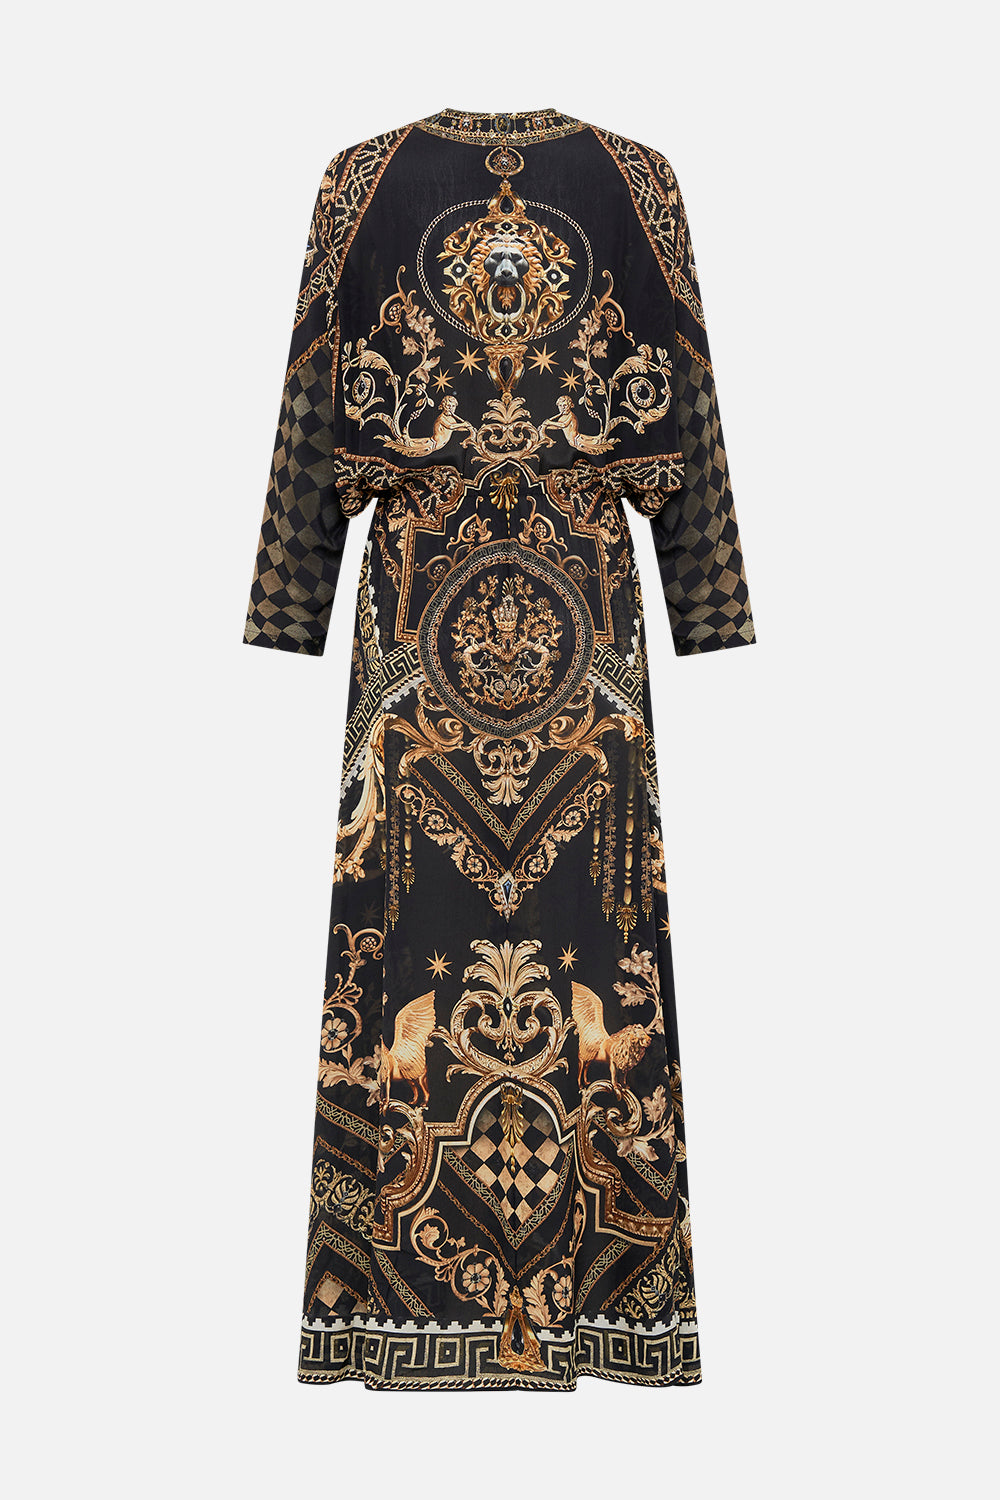 Twist Front Batwing Dress, Duomo Dynasty | CAMILLA AU – CAMILLA